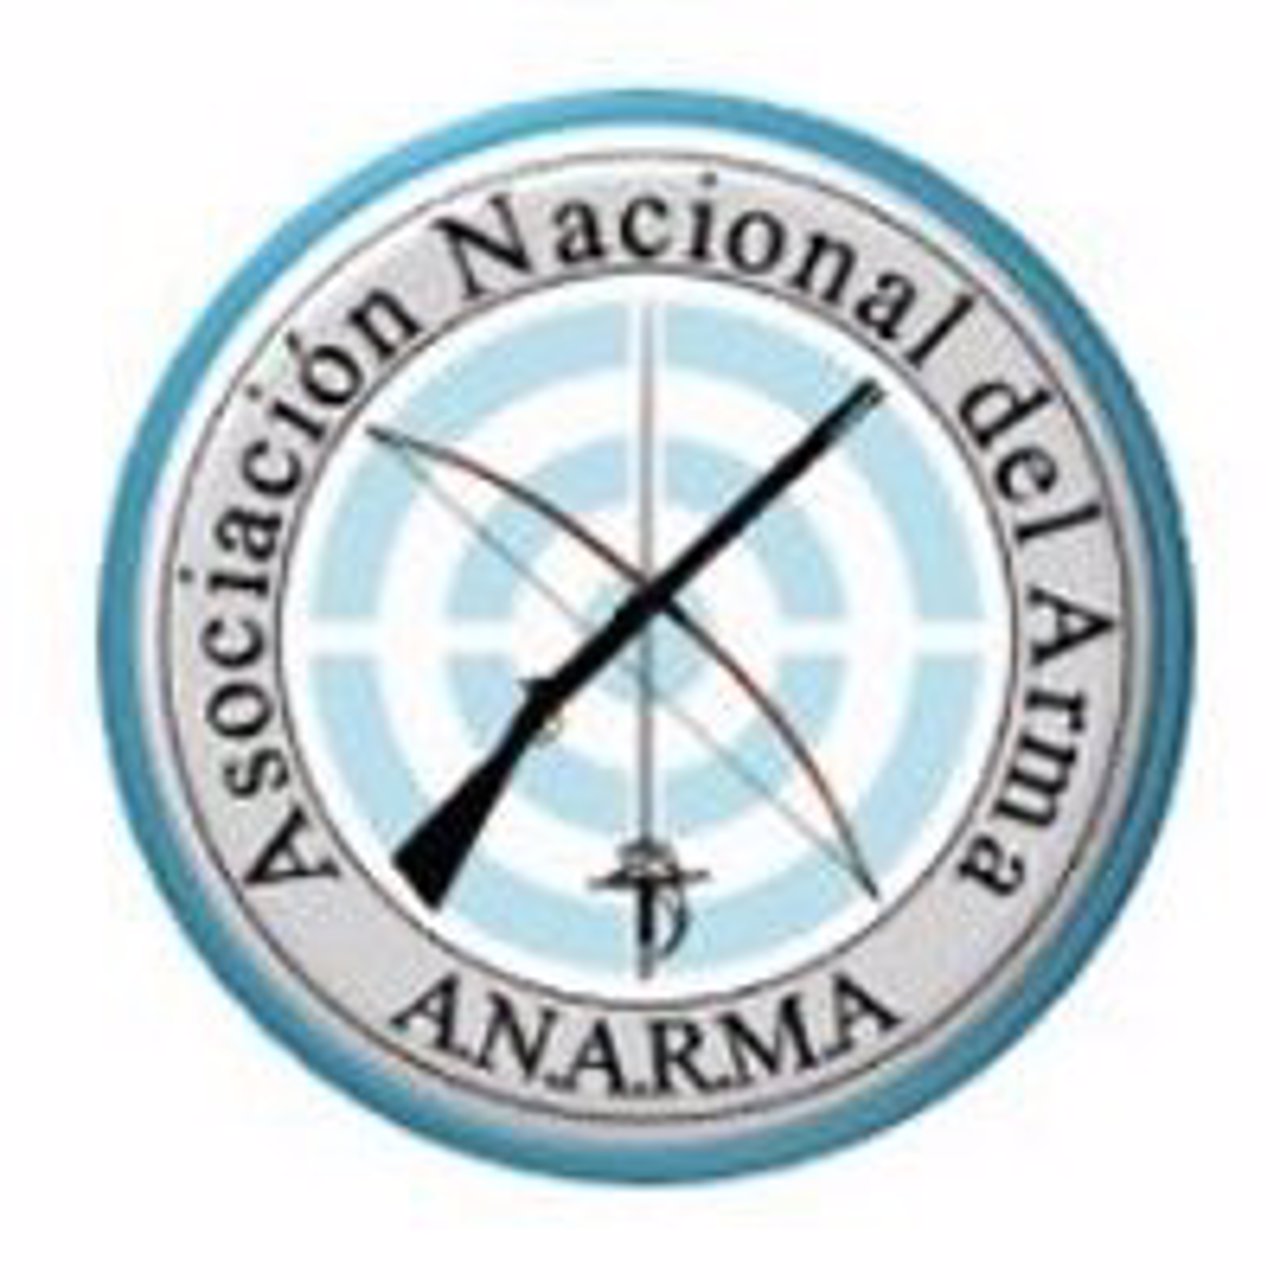 Asociación Nacional del Arma 